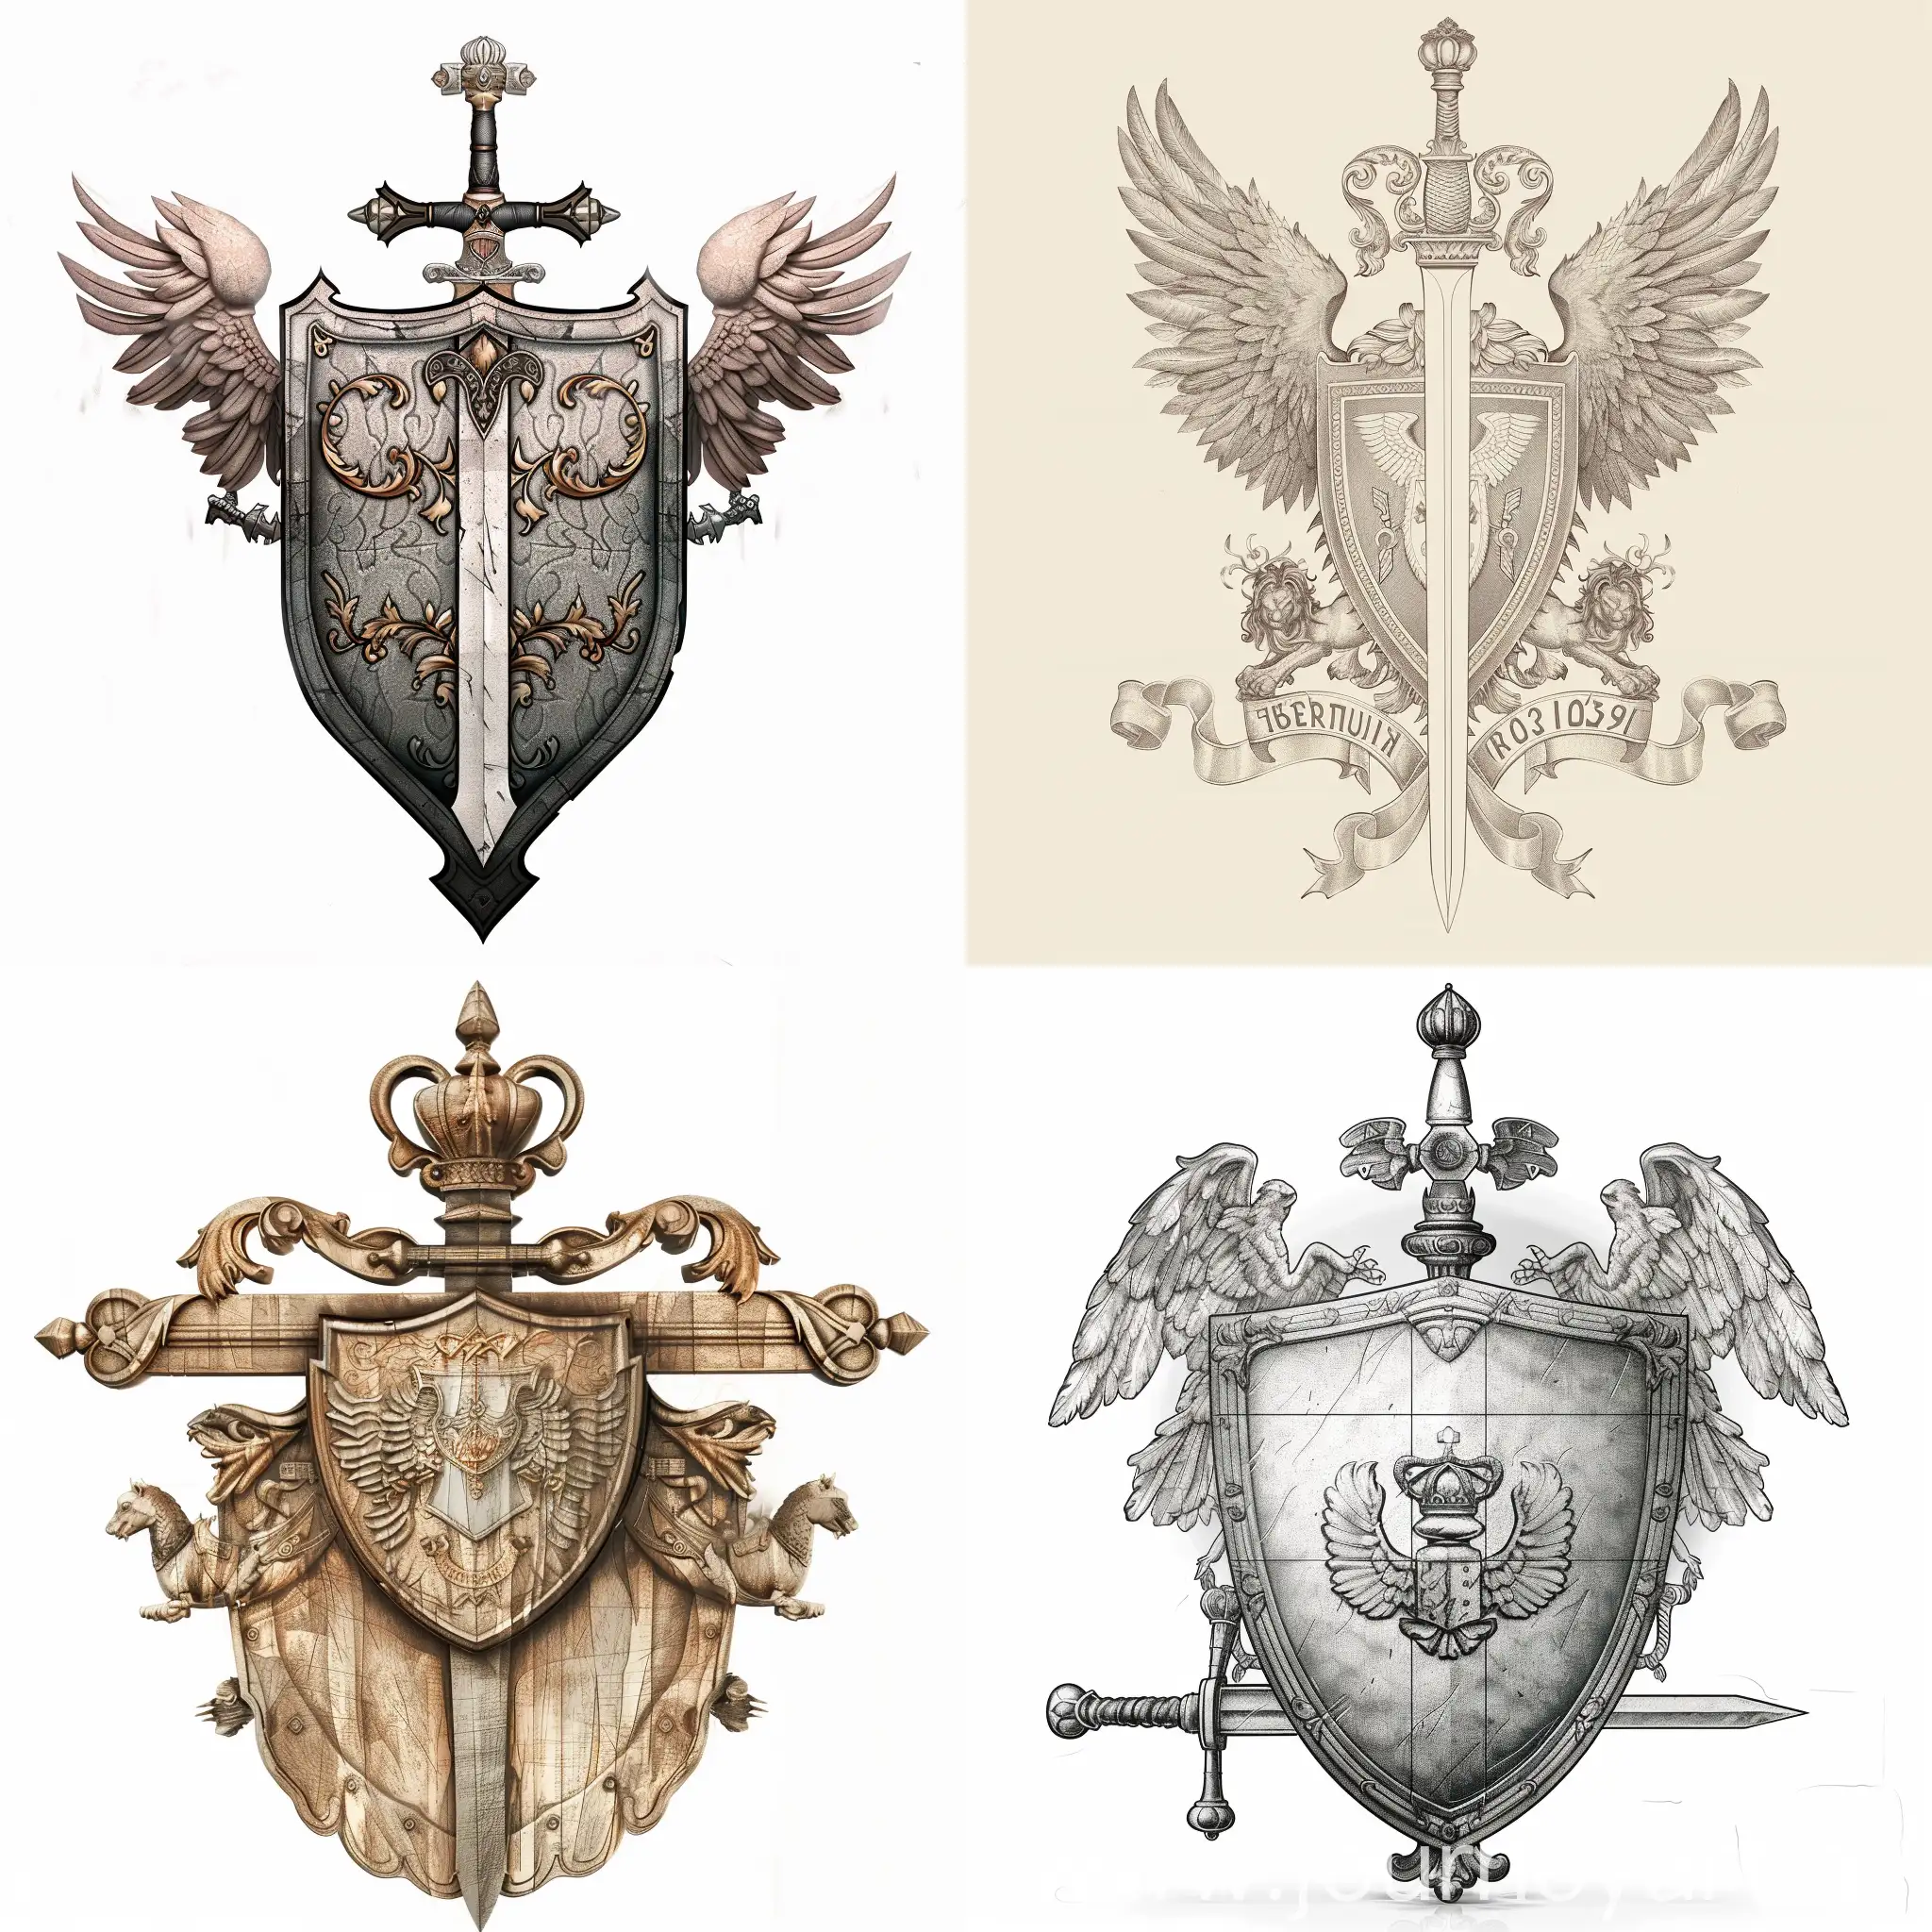 Герб, на котором схематически изображен щит и меч, фон полностью пустой


